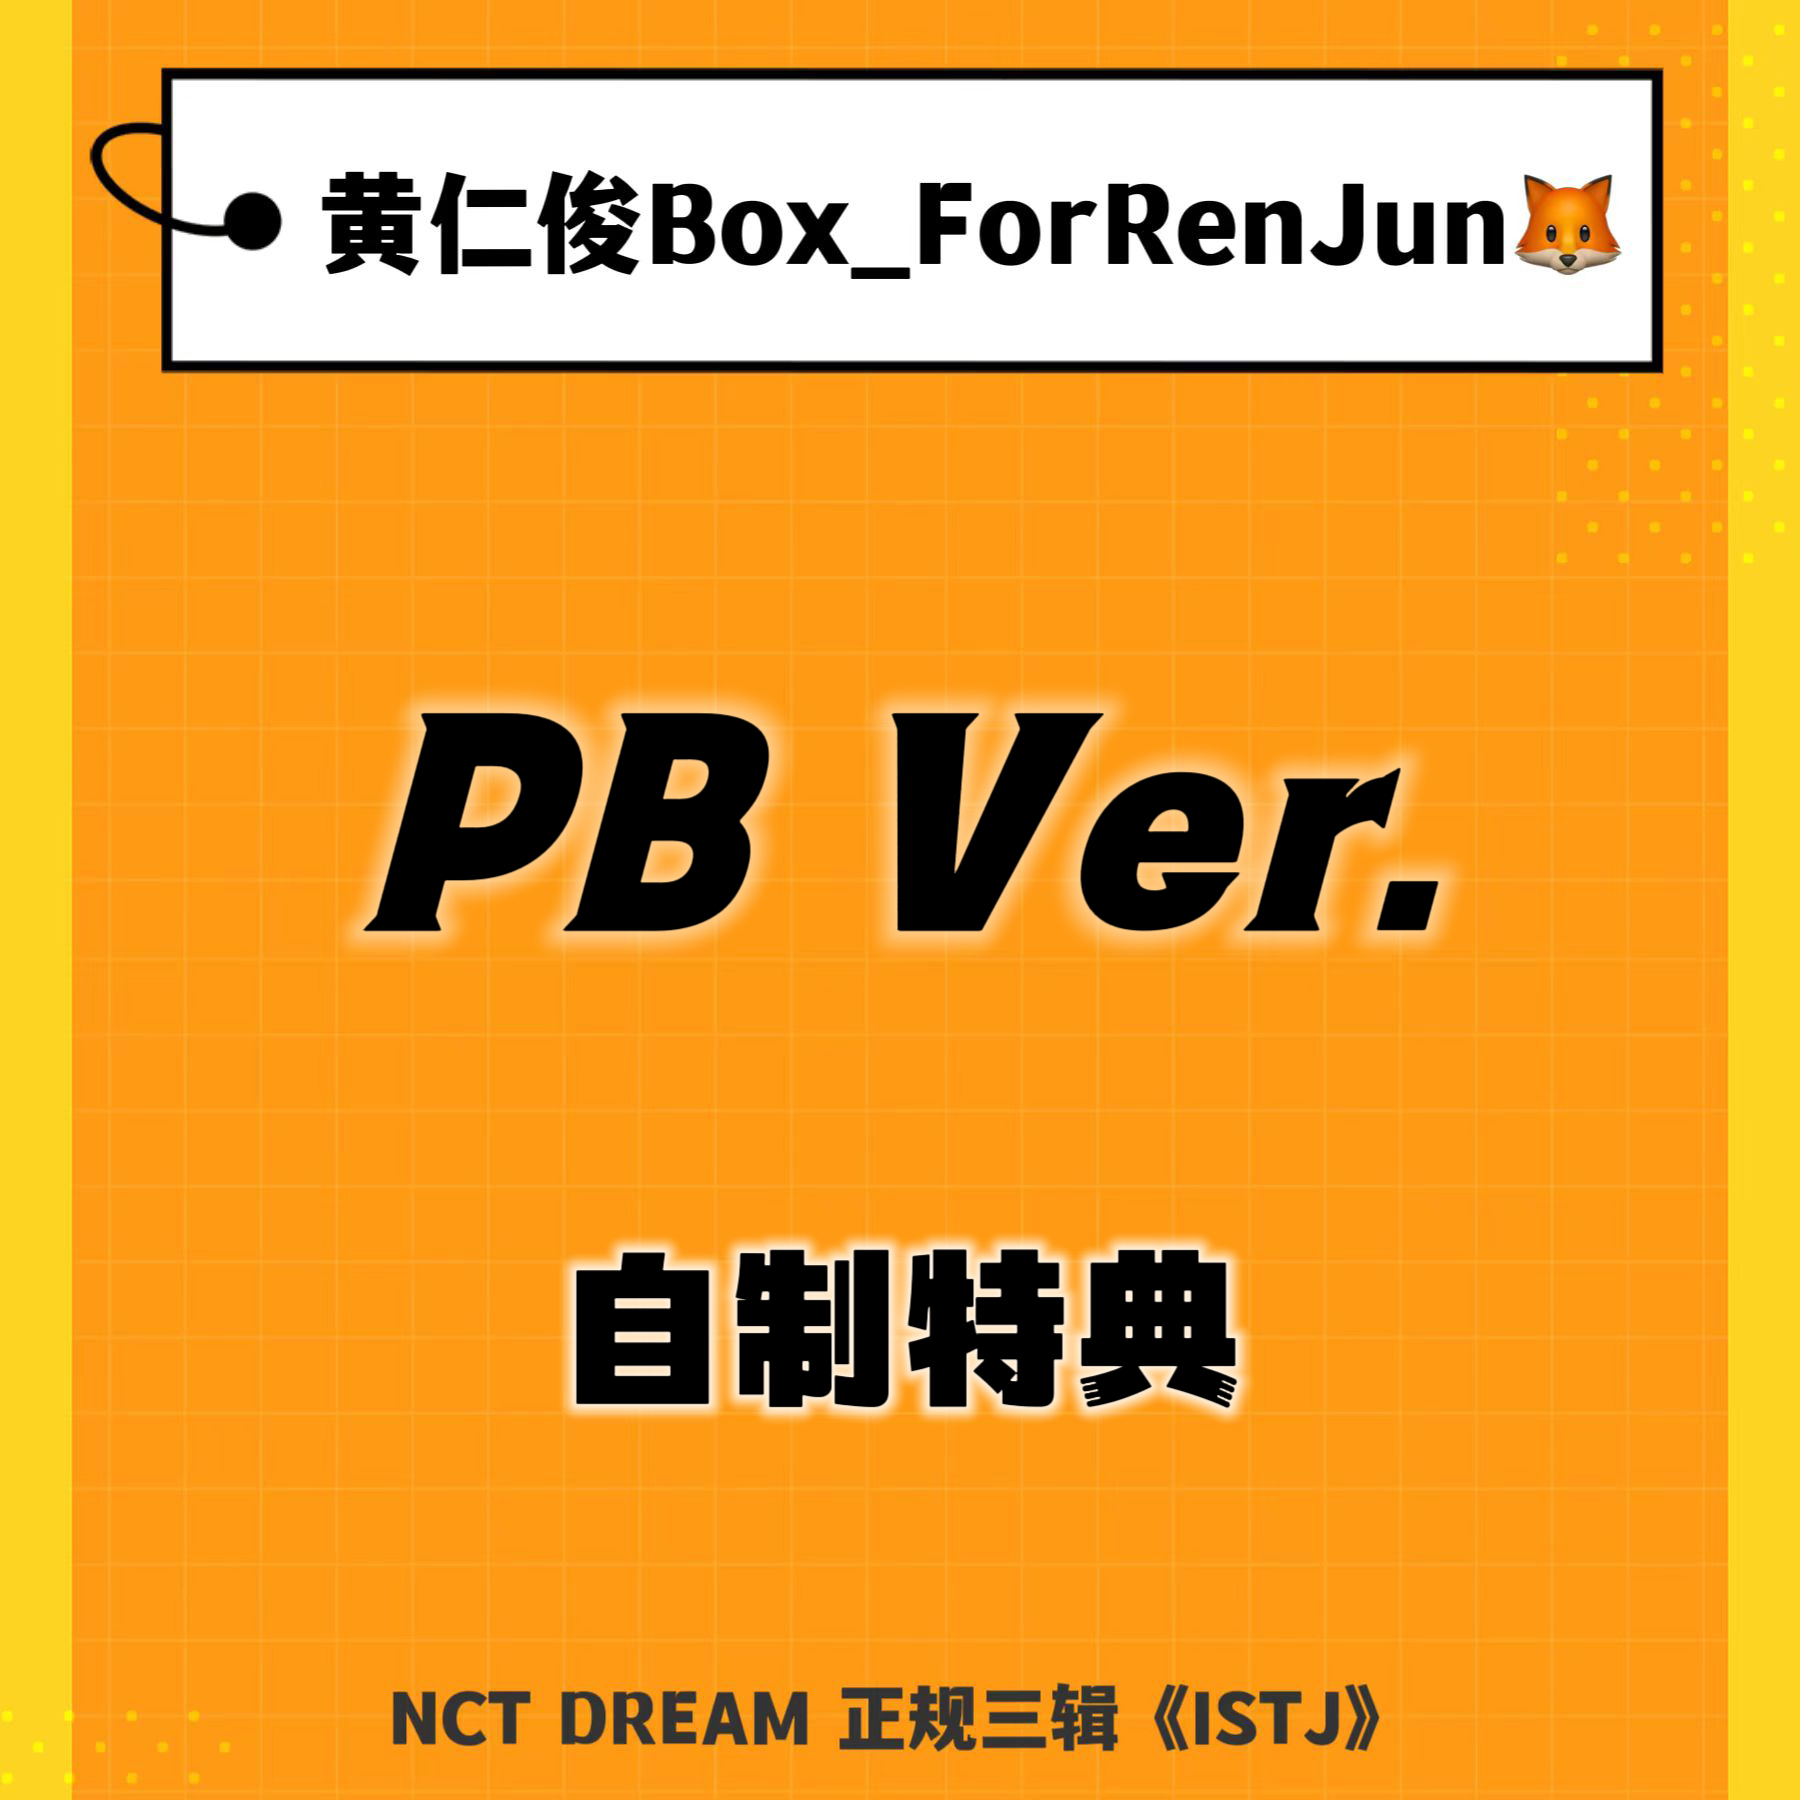 [补款 裸专] (*需备注微店手机号) [Ktown4u Special Gift] NCT DREAM - 正规3辑 [ISTJ] (Photobook Ver.) (随机版本)_黄仁俊吧RenJunBar